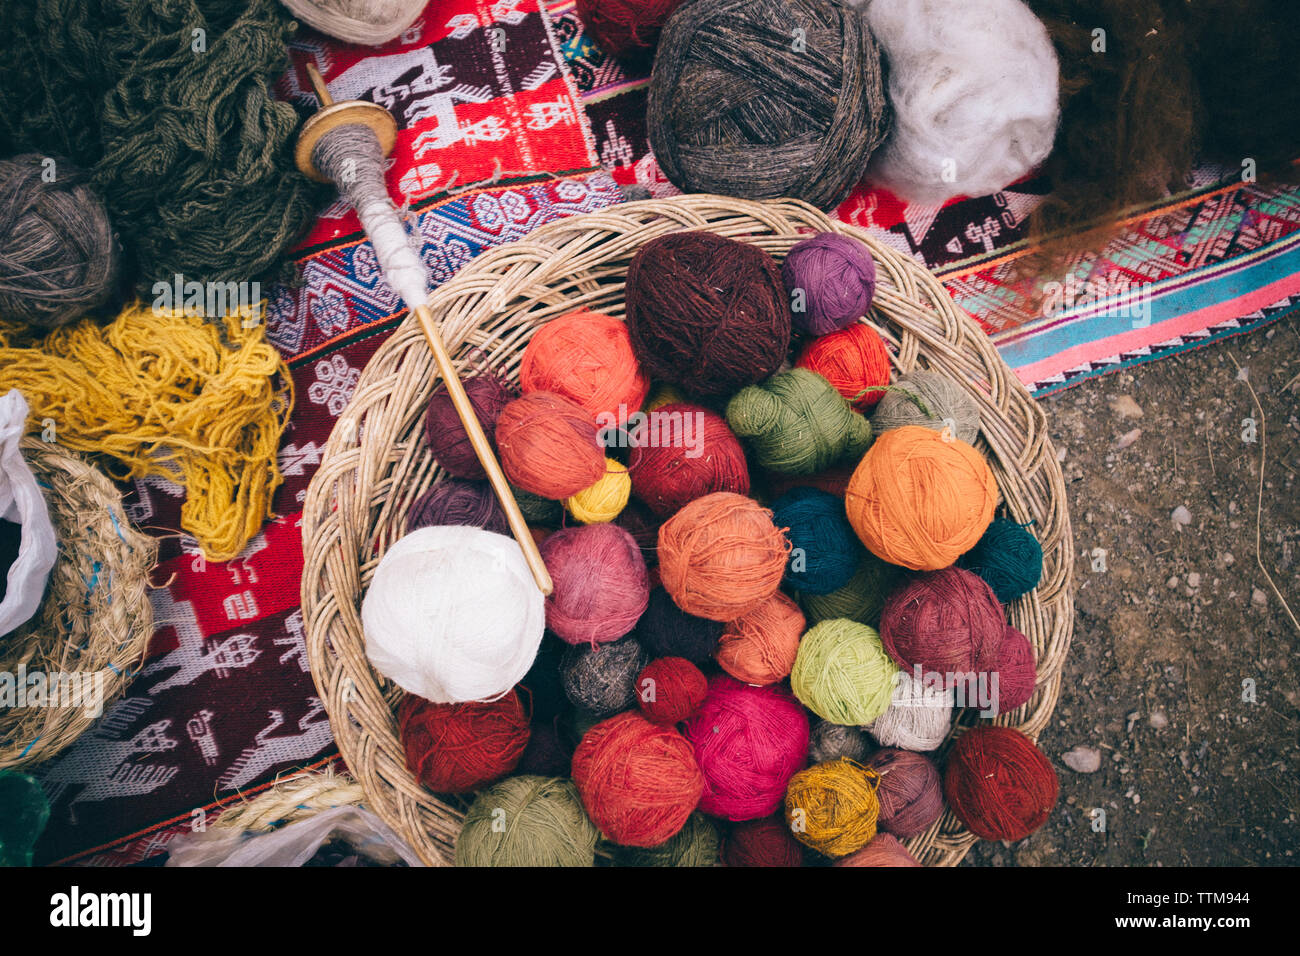 Portrait de laines colorés for sale at market Banque D'Images